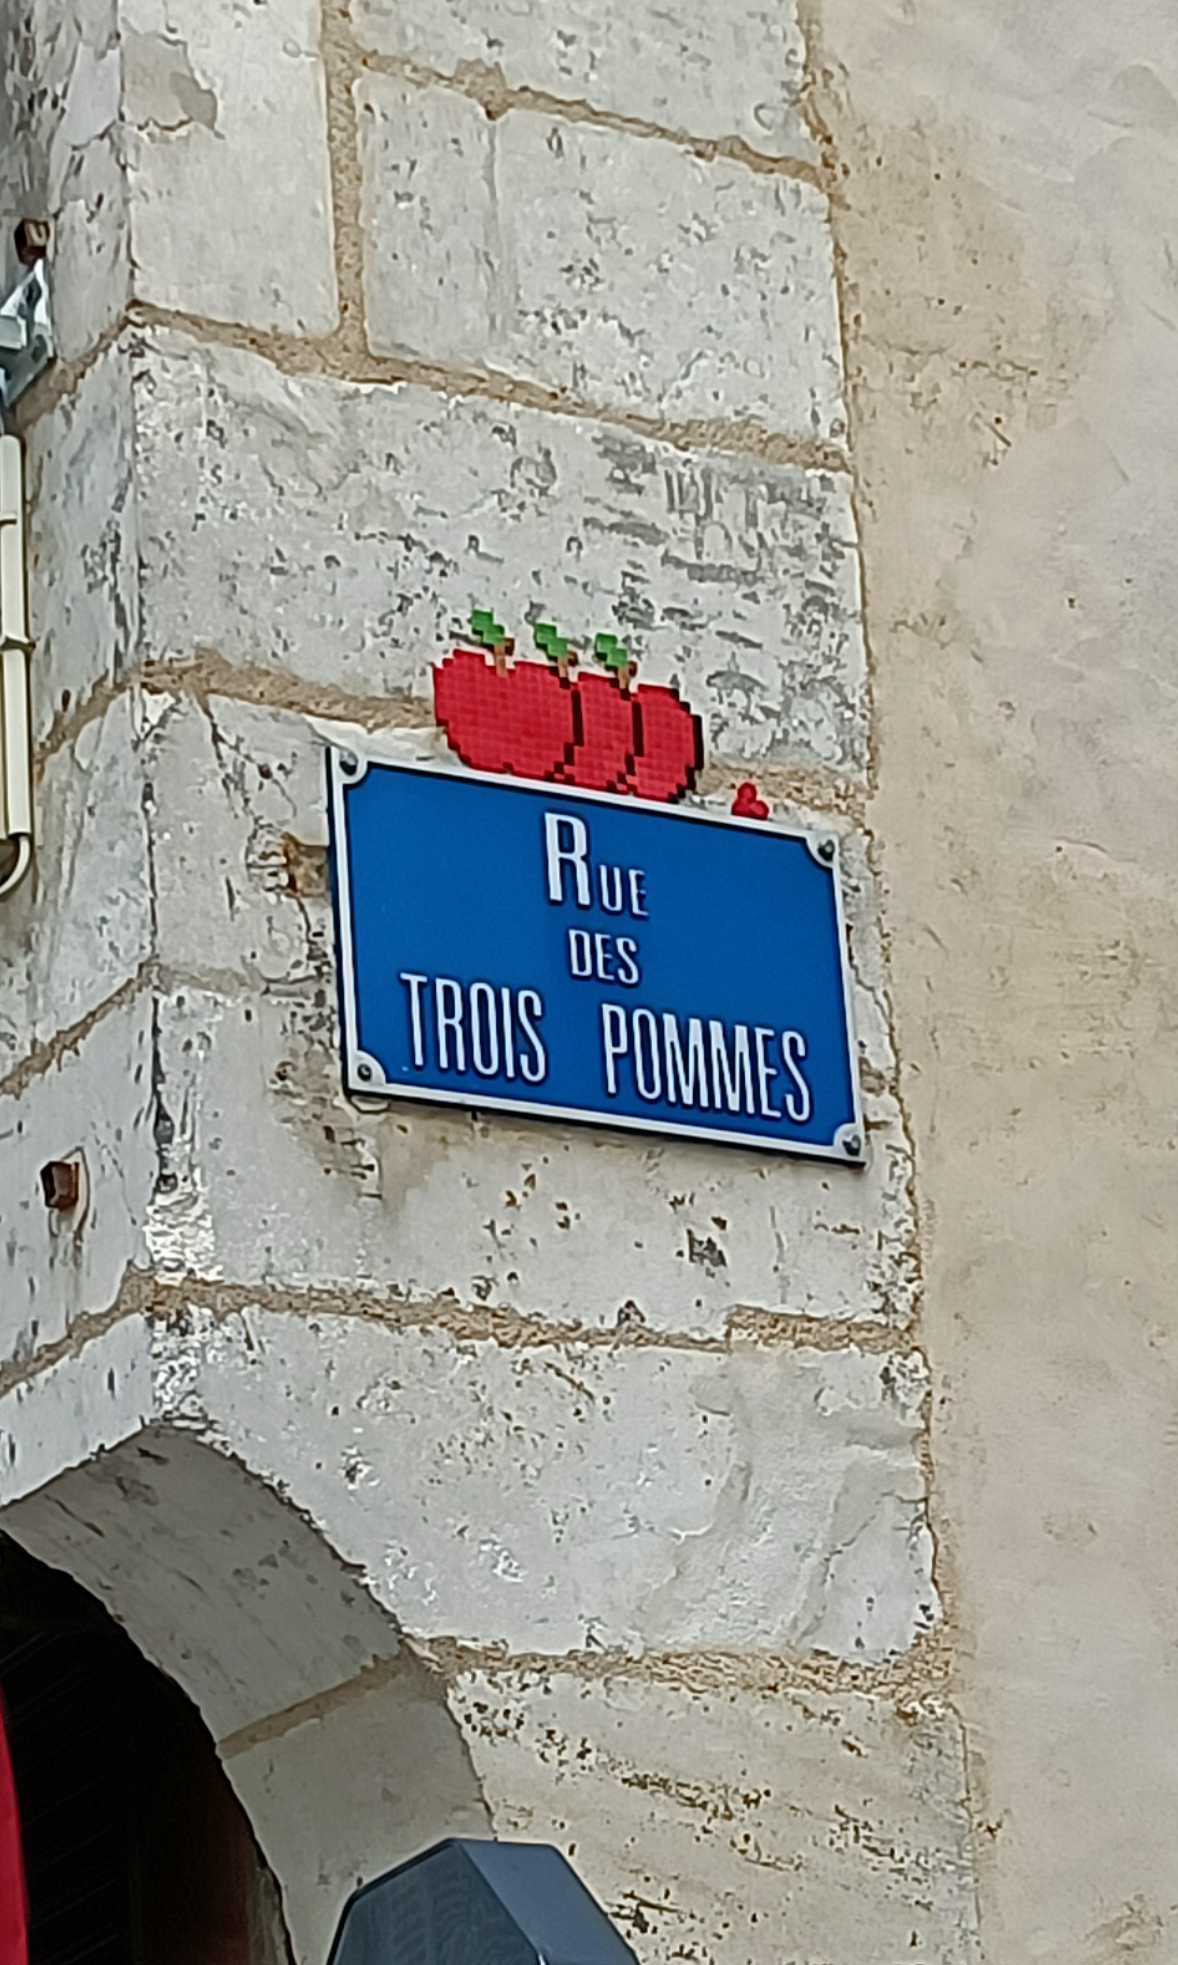 Mosaic 5614 Les 3 pommes de Mifamosa capturé par Rabot à Bourges France